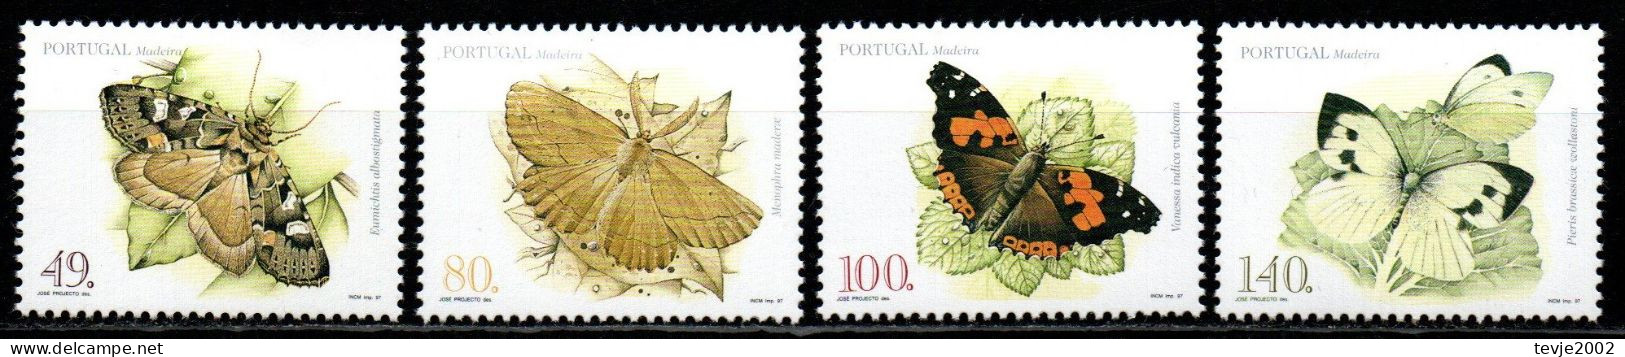 Portugal Madeira 1997 - Mi.Nr. 187 - 190 A - Postfrisch MNH - Tiere Animals Schmetterlinge Butterflies - Butterflies